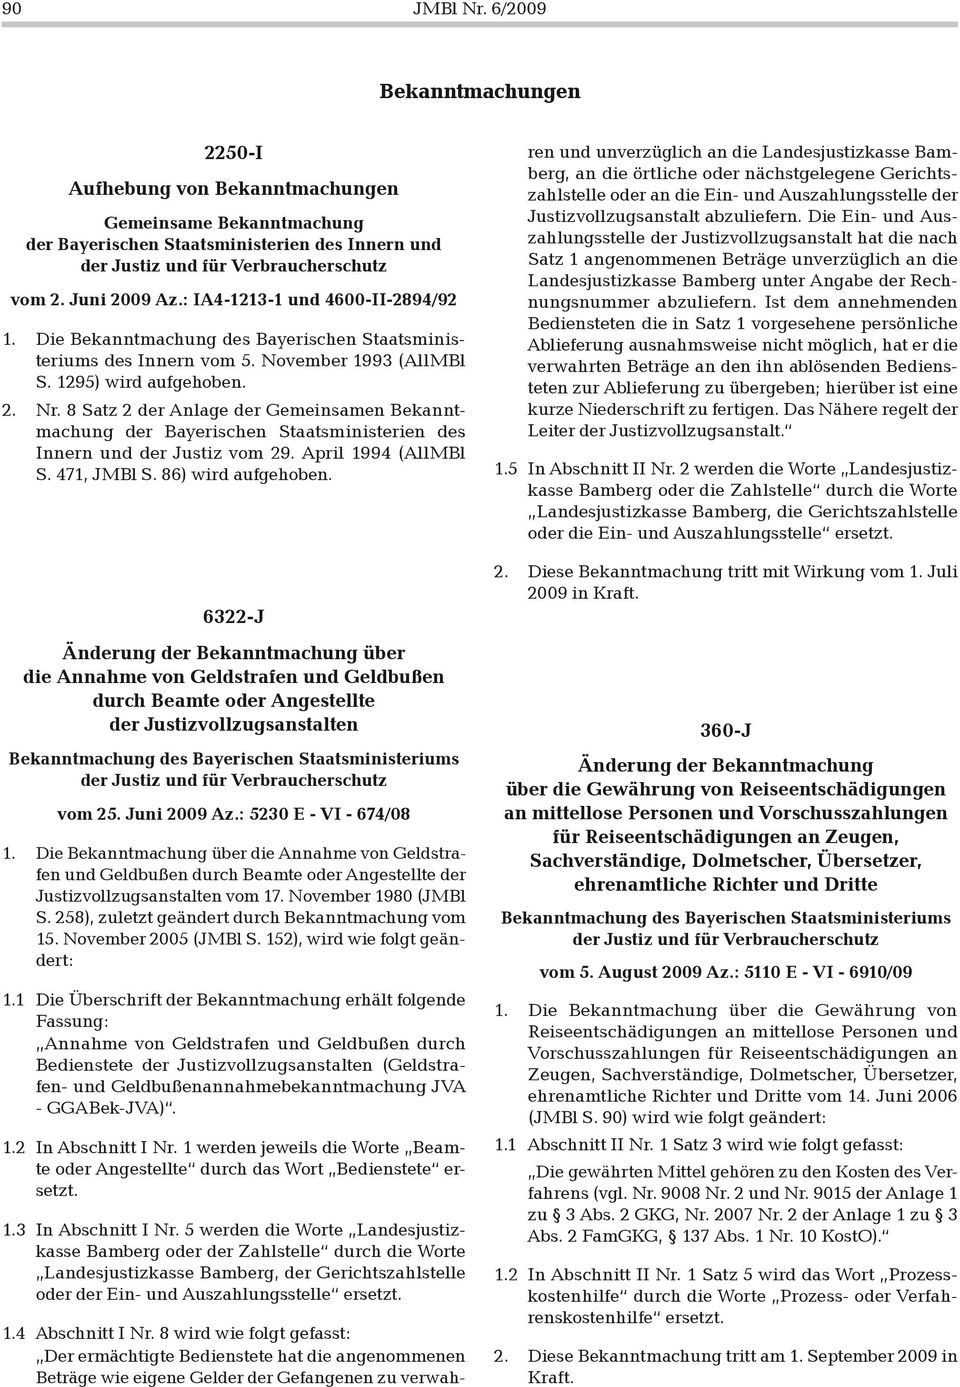 8 Satz 2 der Anlage der Gemeinsamen Bekanntmachung der Bayerischen Staatsministerien des Innern und der Justiz vom 29. April 1994 (AllMBl S. 471, JMBl S. 86) wird aufgehoben.